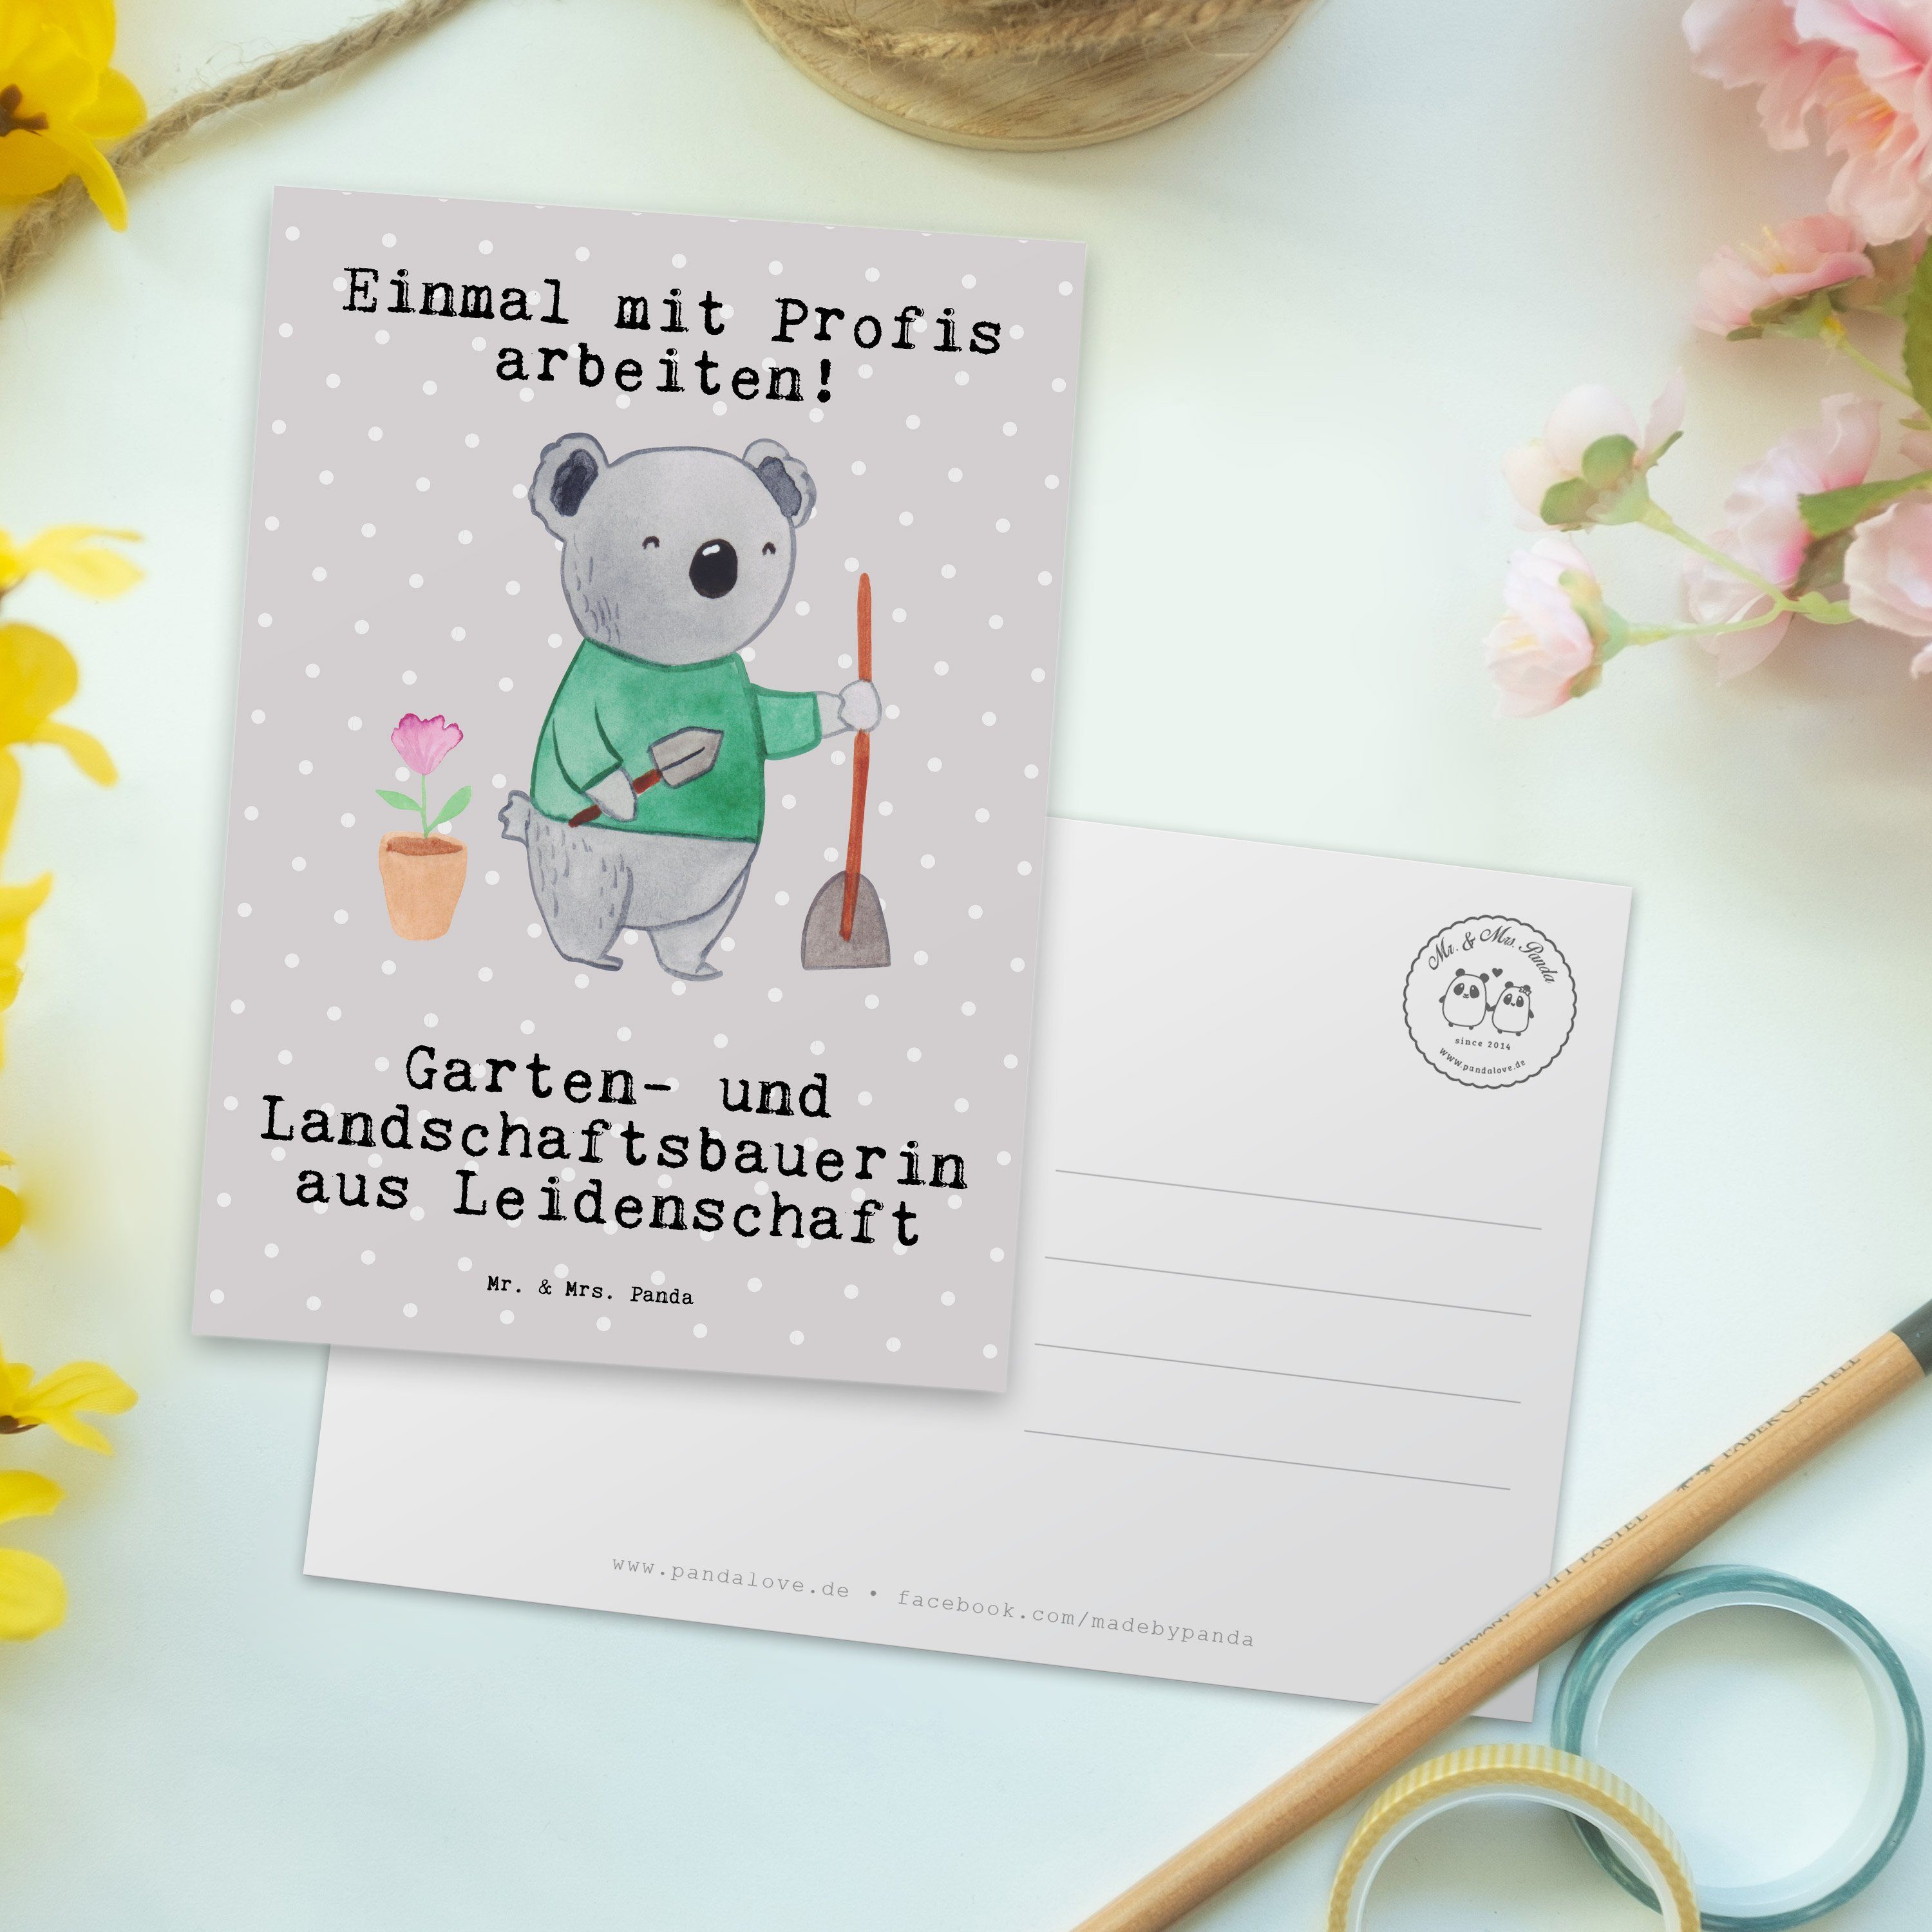 Mr. & und Grau Garten- Leidenschaft Landschaftsbauerin Gesc Panda - - Pastell aus Postkarte Mrs